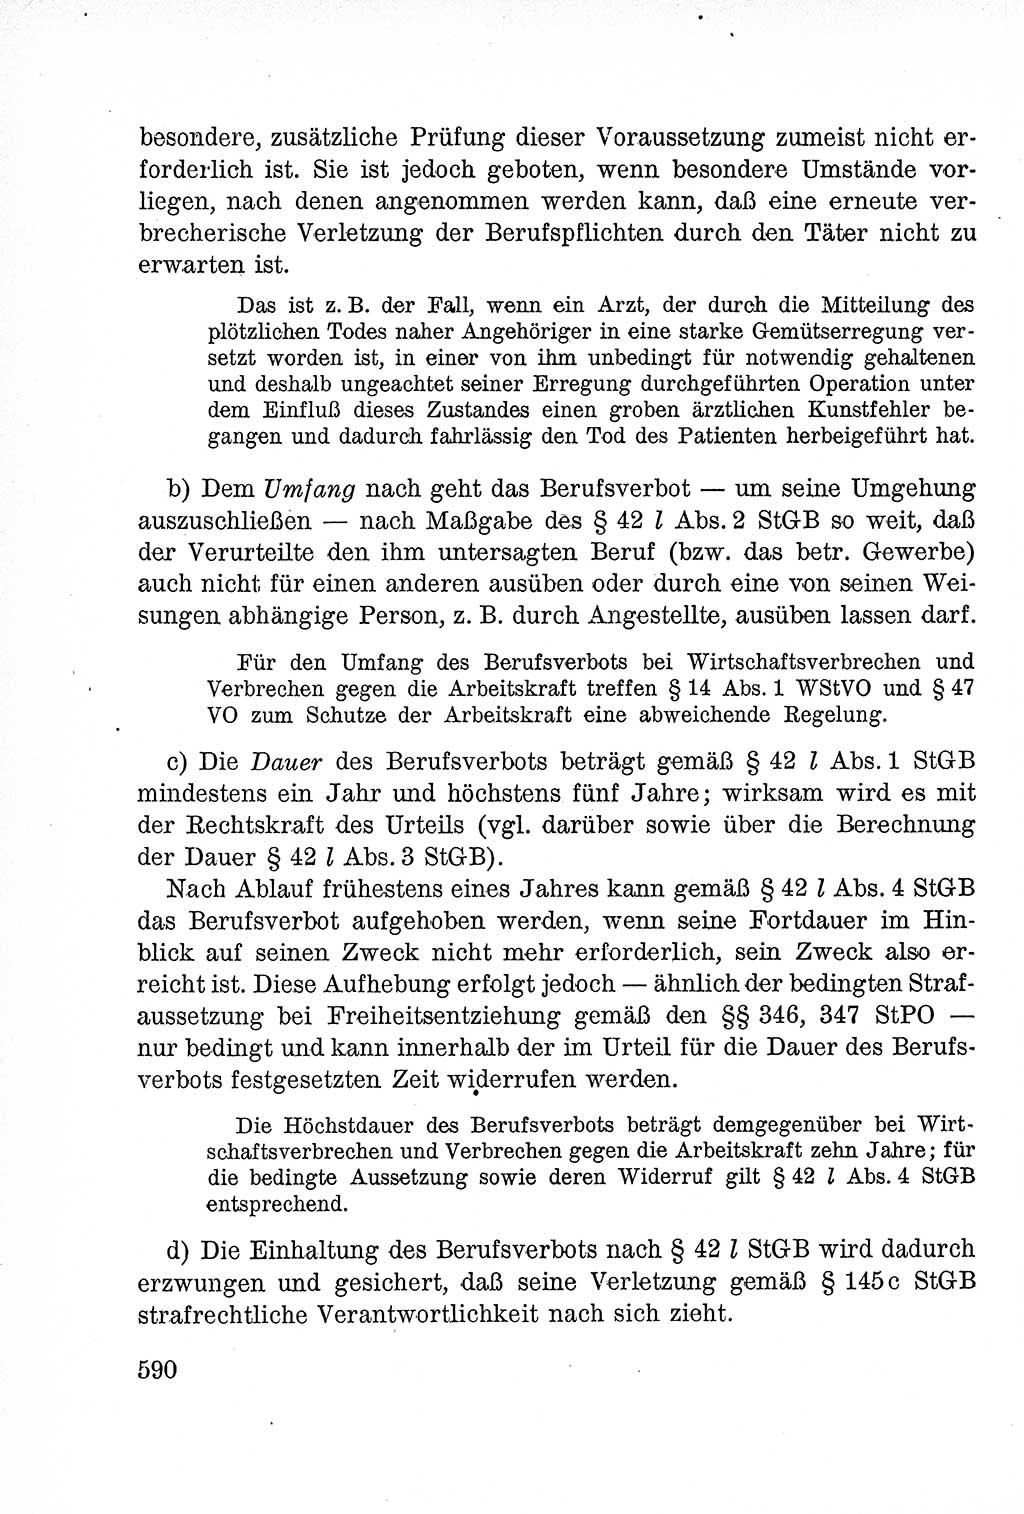 Lehrbuch des Strafrechts der Deutschen Demokratischen Republik (DDR), Allgemeiner Teil 1957, Seite 590 (Lb. Strafr. DDR AT 1957, S. 590)